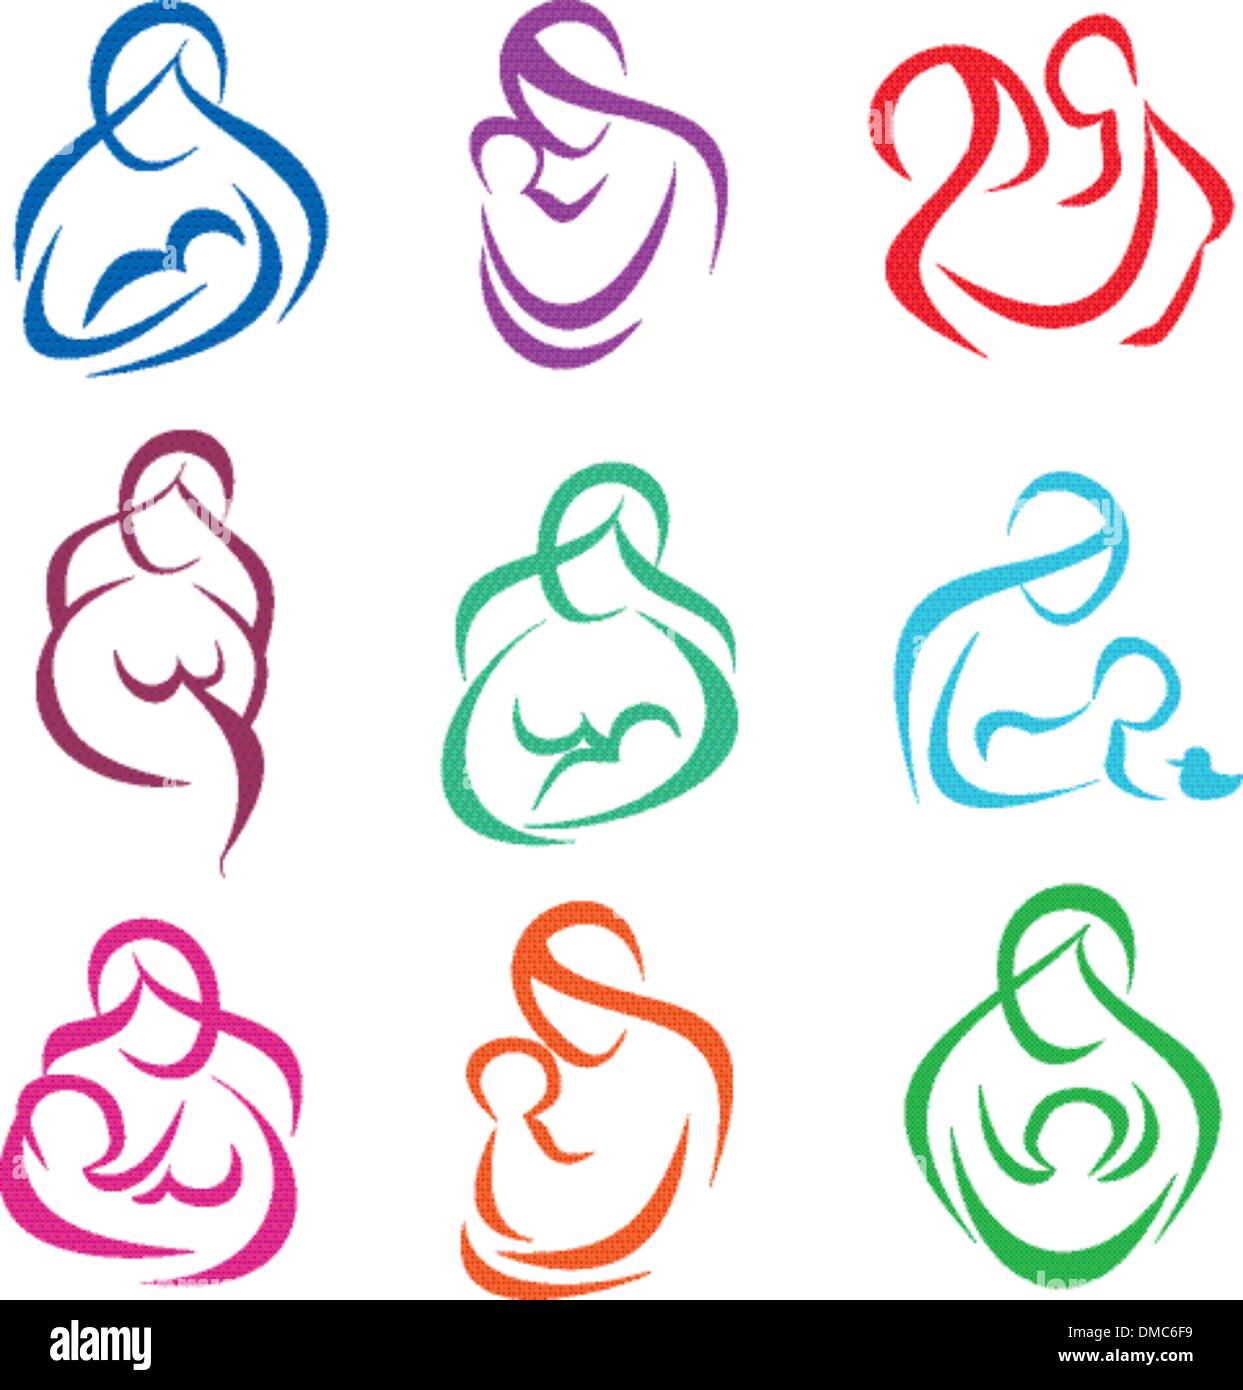 Mutter und Kind Satz von Symbolen, Schwangerschaft, Elternschaft Konzept Stock Vektor